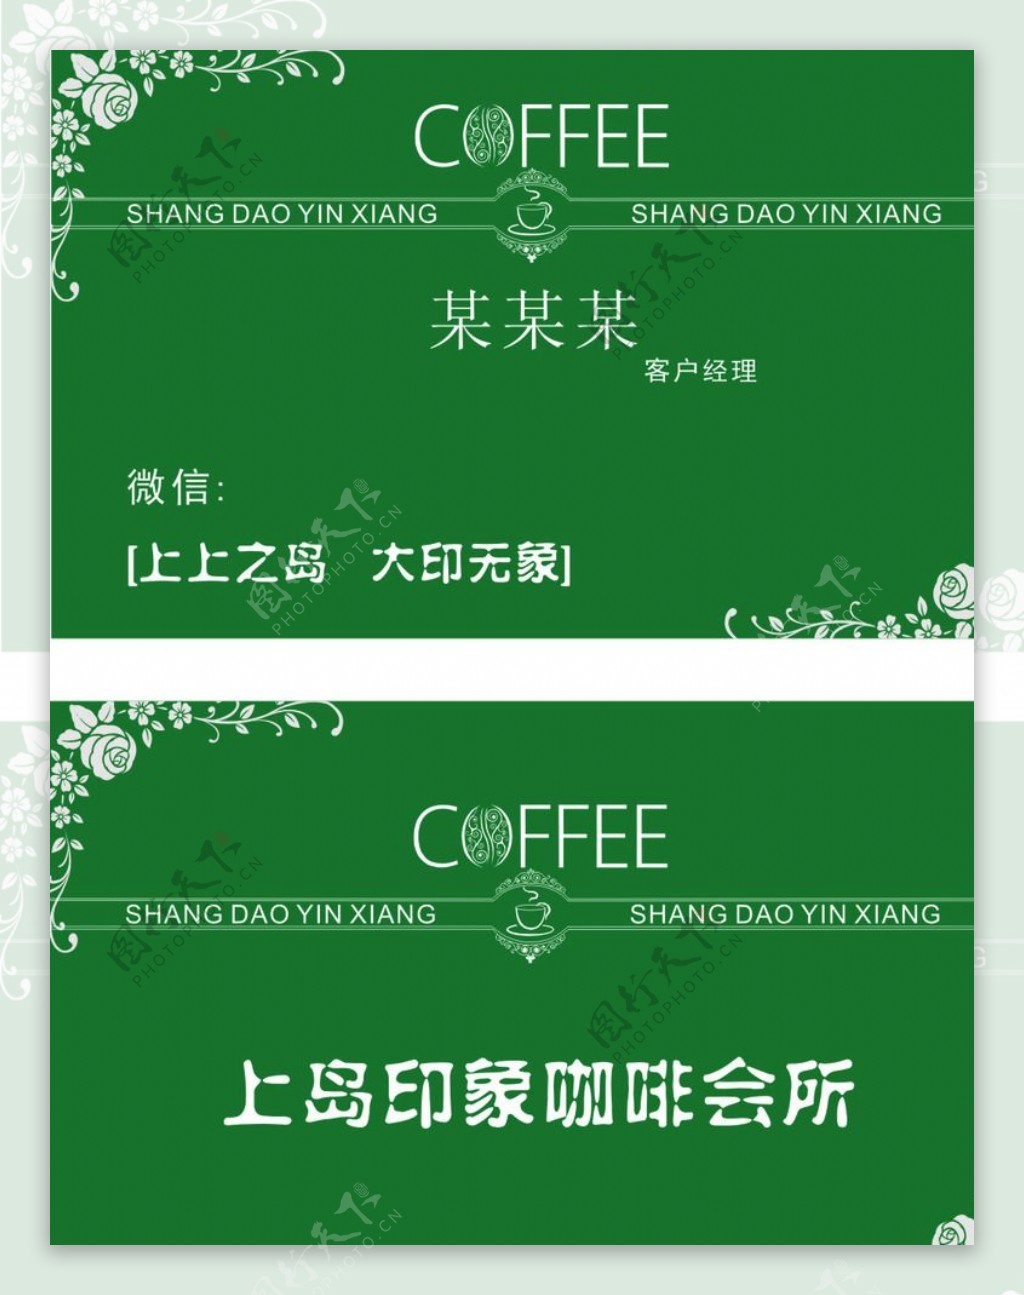 上岛印象咖啡名片